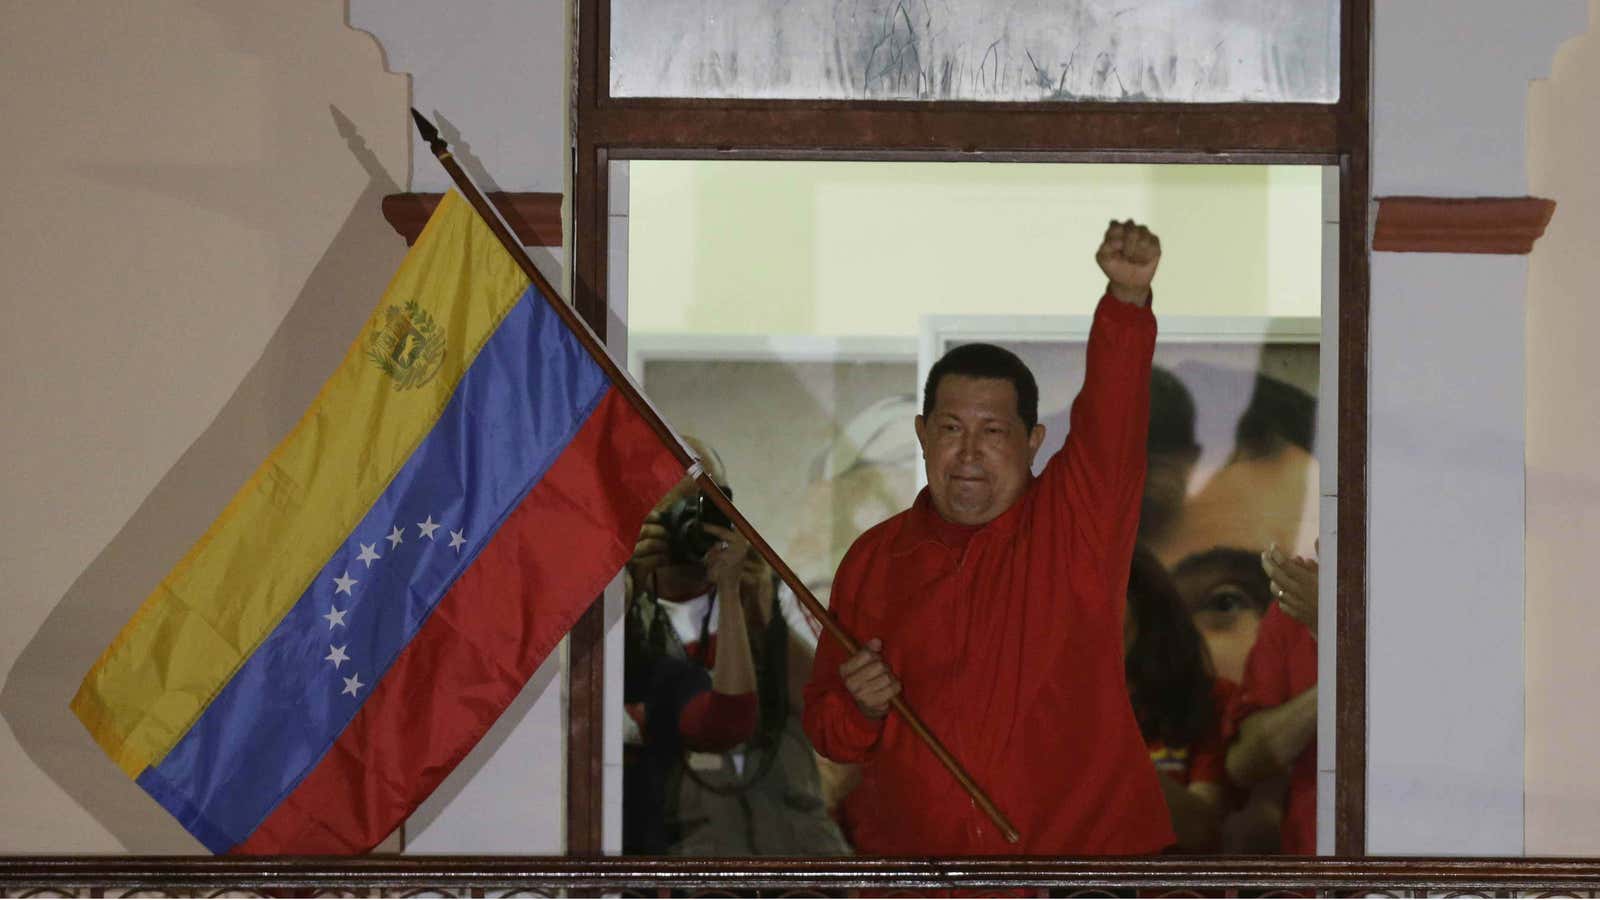 Hugo Chavez waves the flag